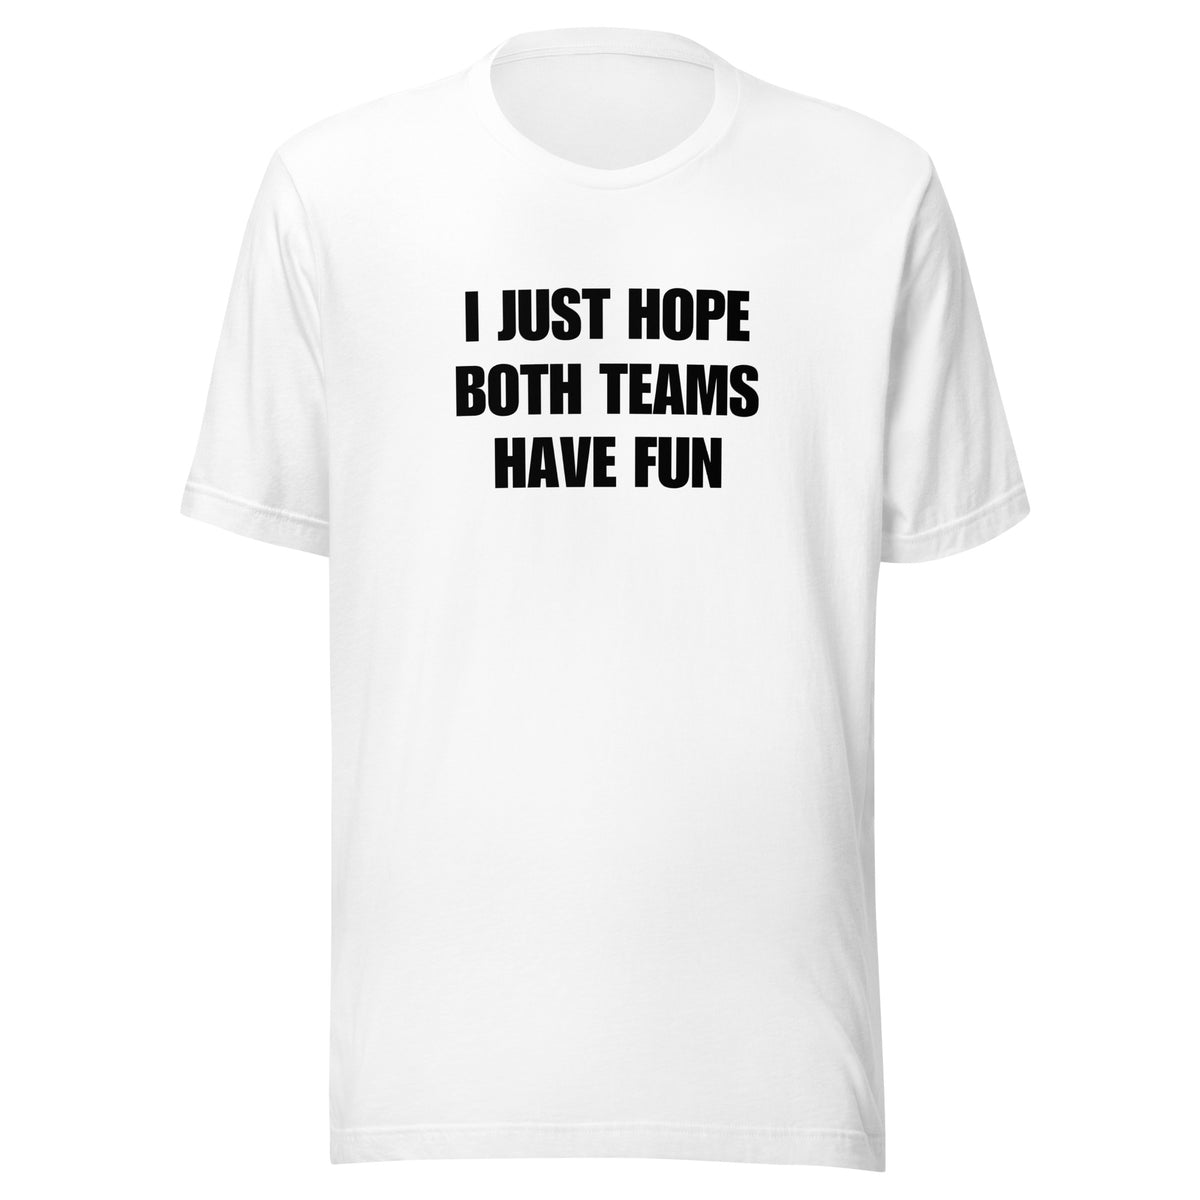 Both Teams Have Fun t-shirt